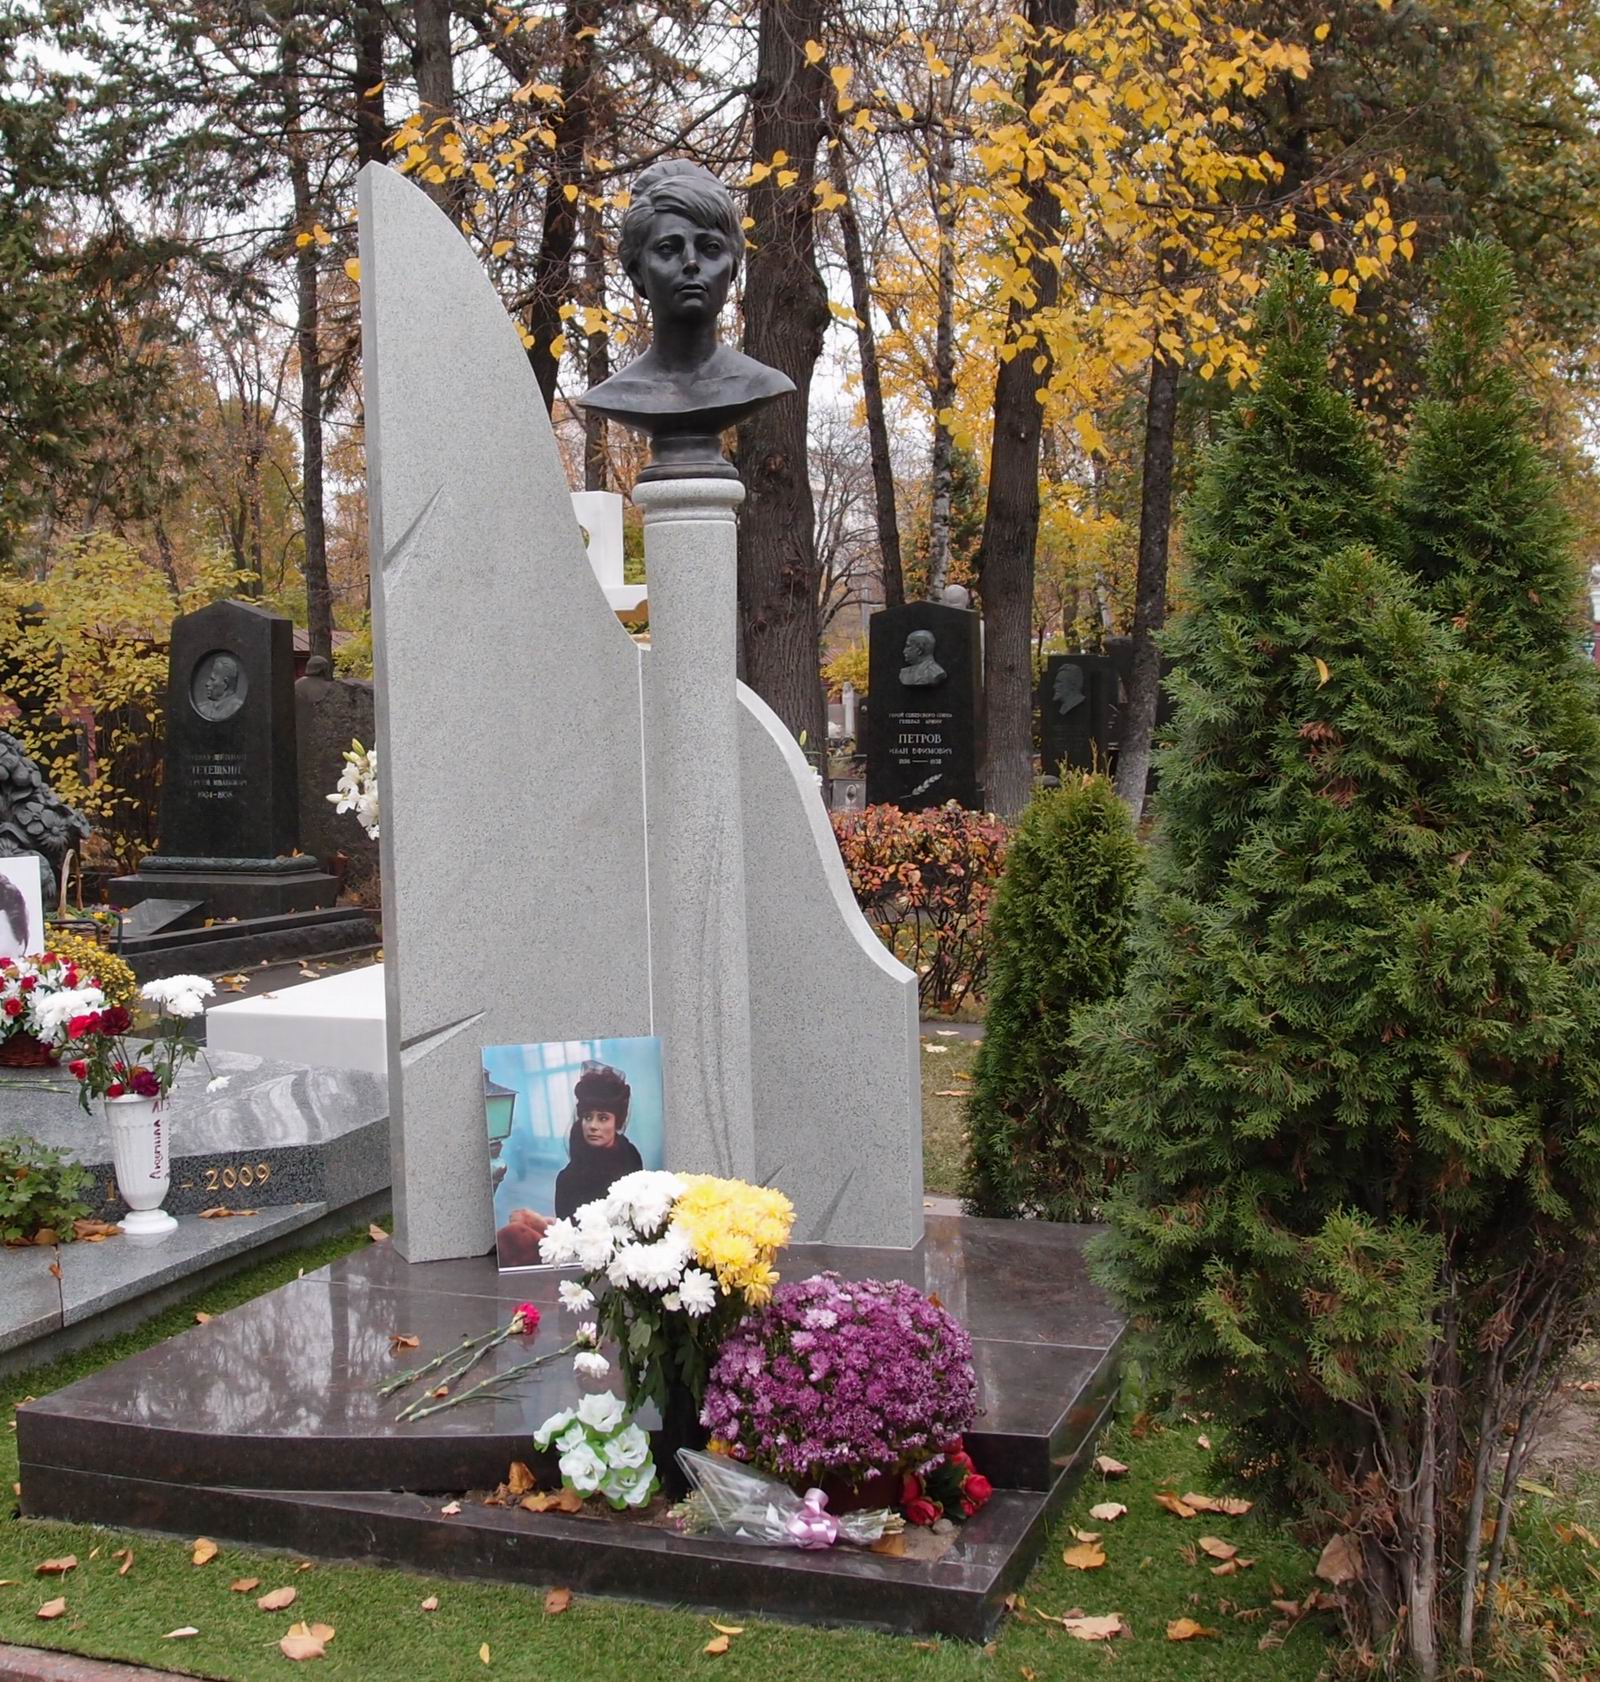 Памятник на могиле Самойловой Т.Е. (1934-2014), на Новодевичьем кладбище (5-23а-8). Нажмите левую кнопку мыши чтобы увидеть фрагмент памятника.